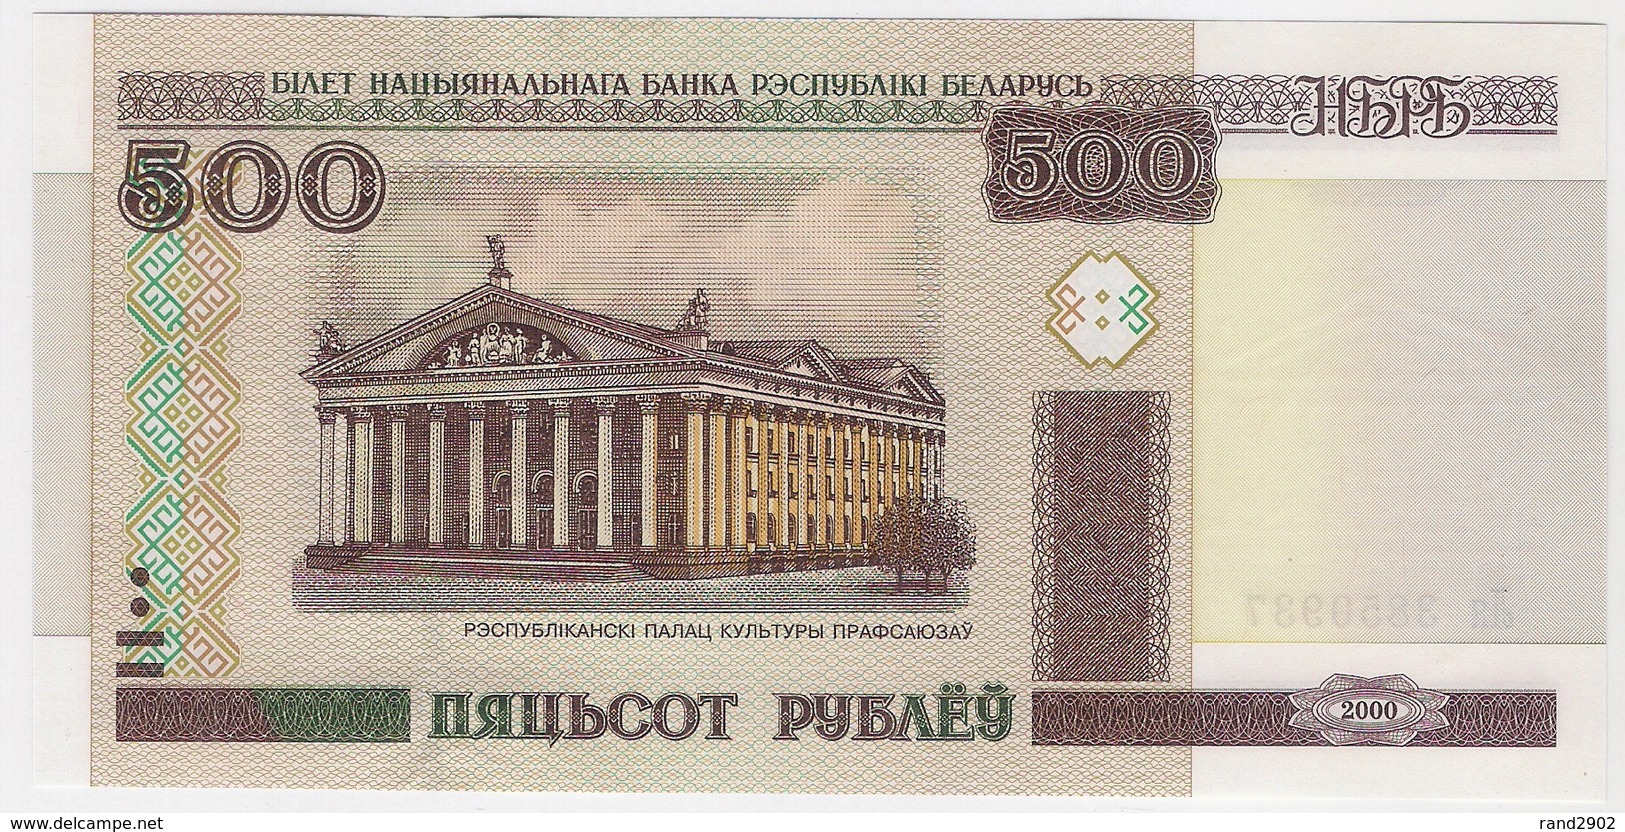 Belarus 500 Rublei 2000 (14) P-27 /025B/ - Belarus